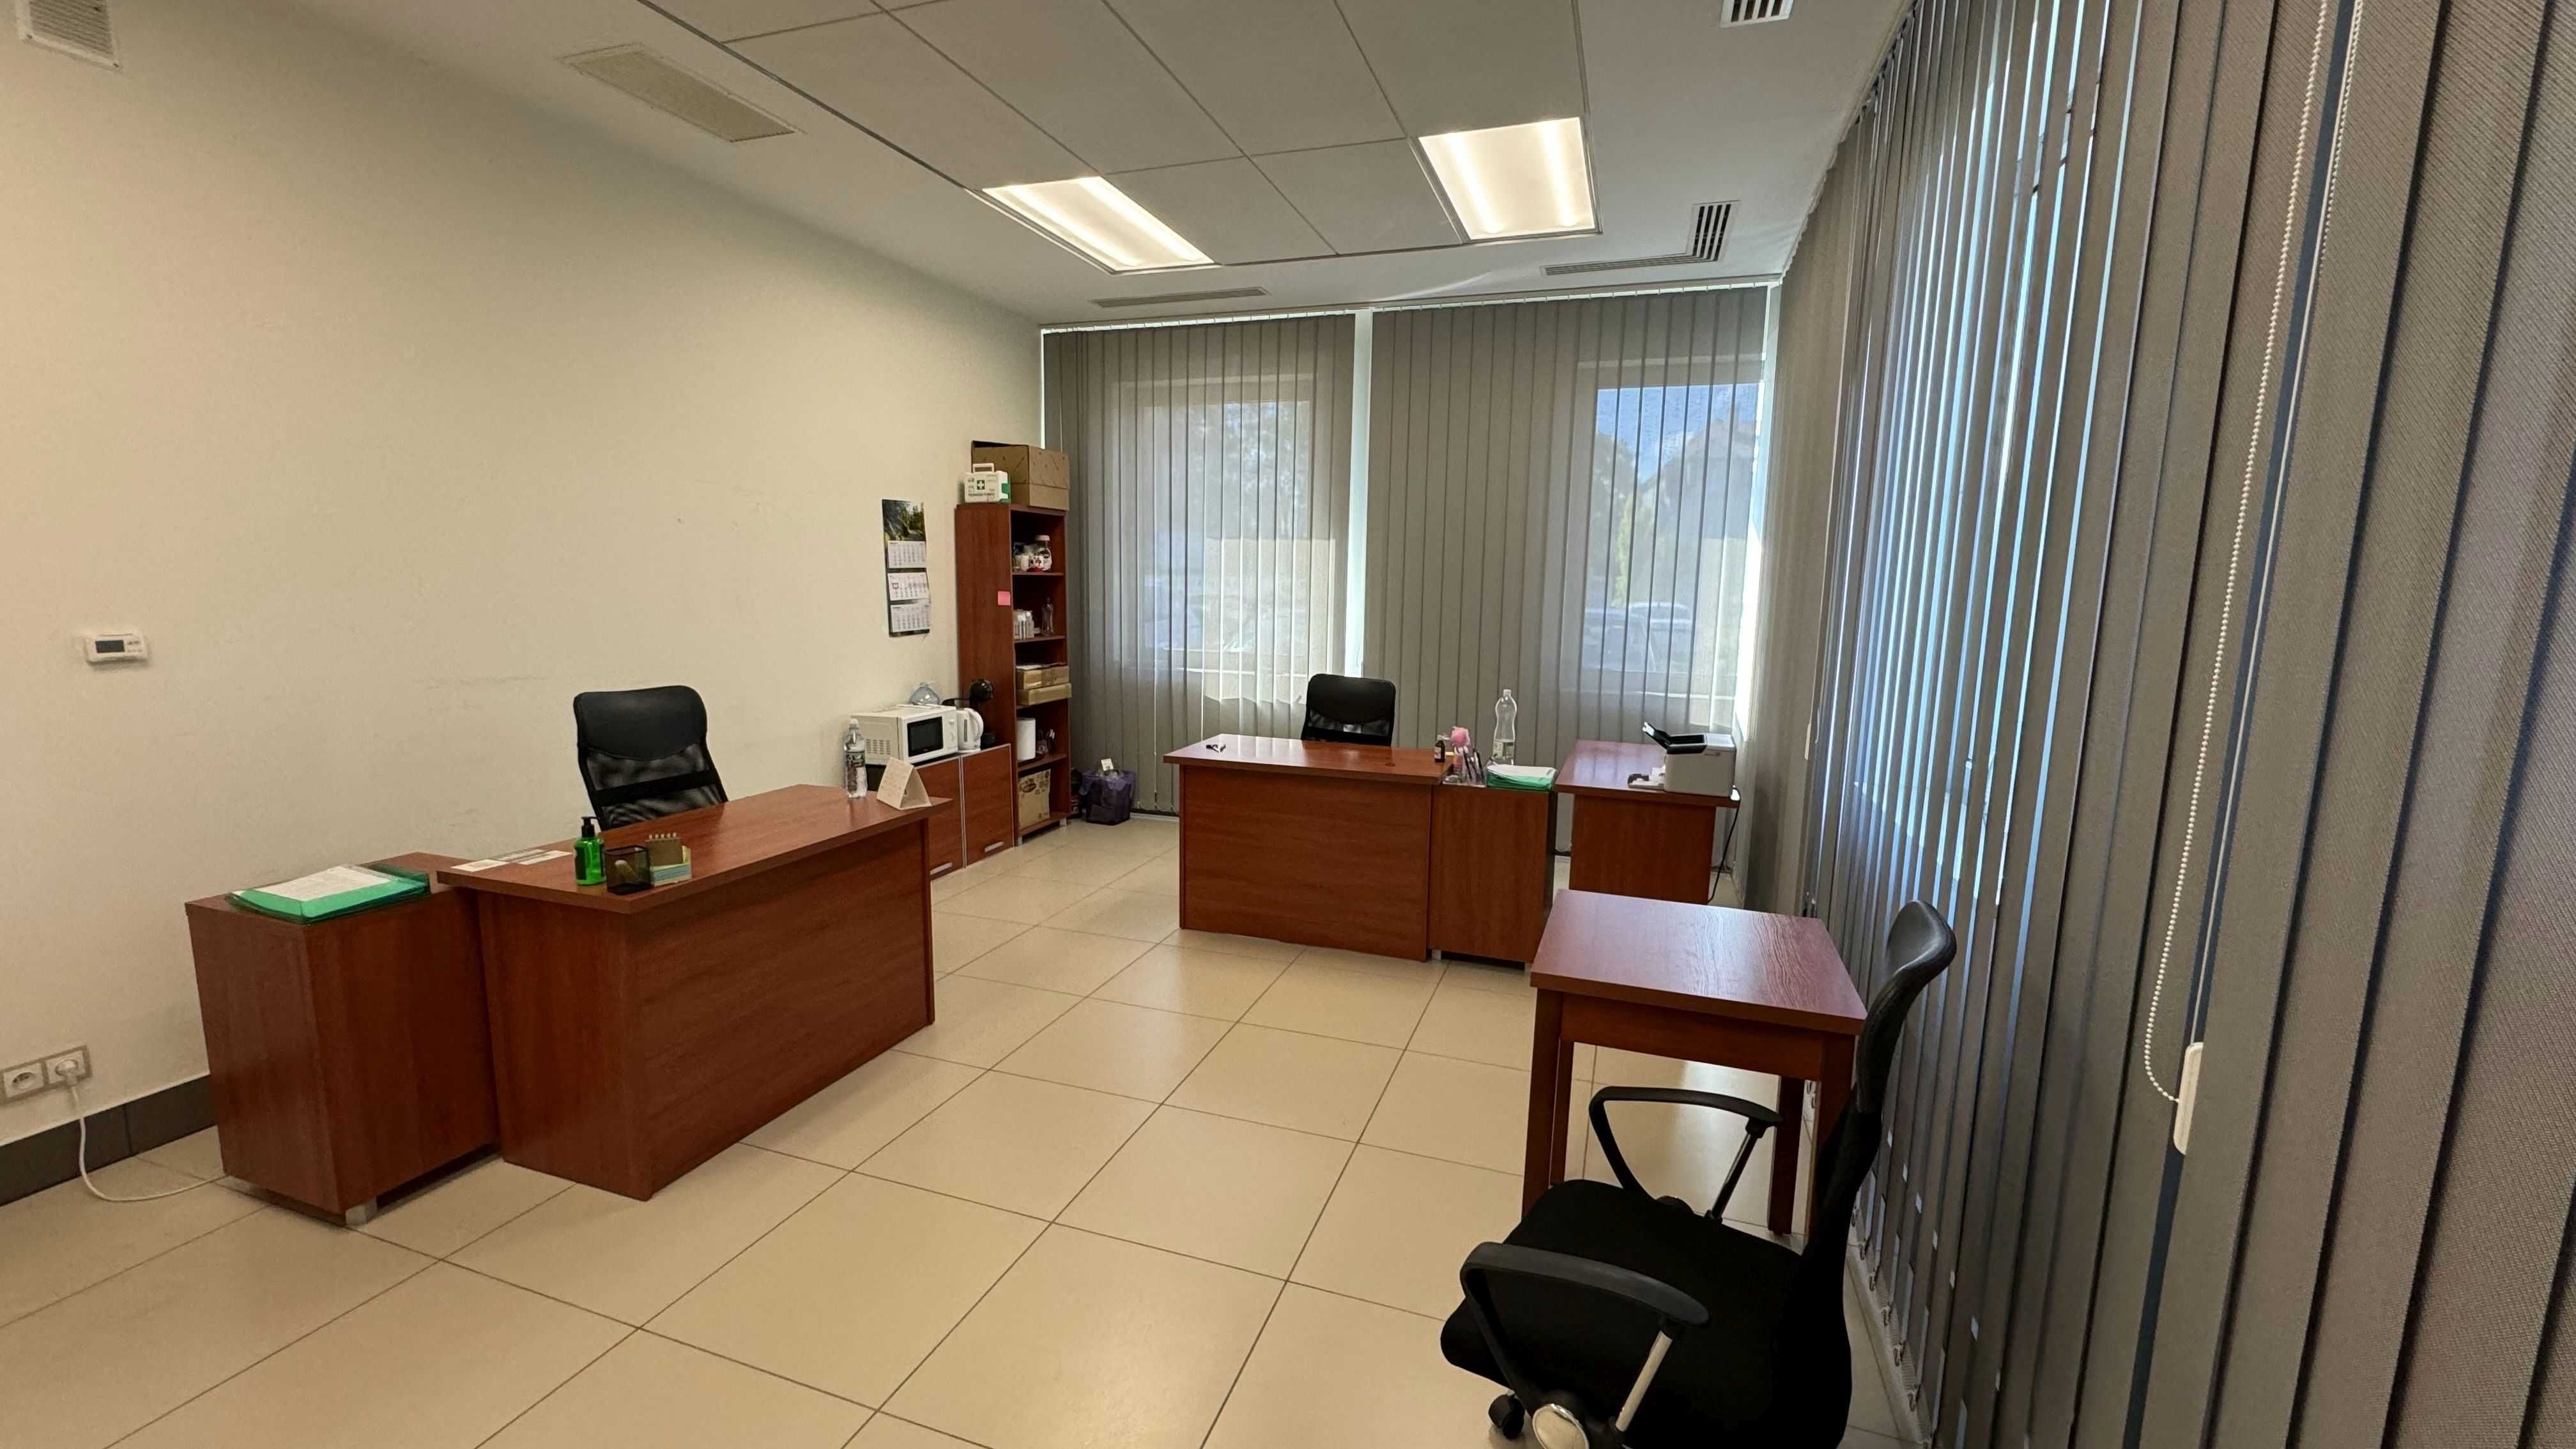 Biuro, lokal, pomieszczenie biurowe 30 m2 Kilińskiego 89a do wynajęcia